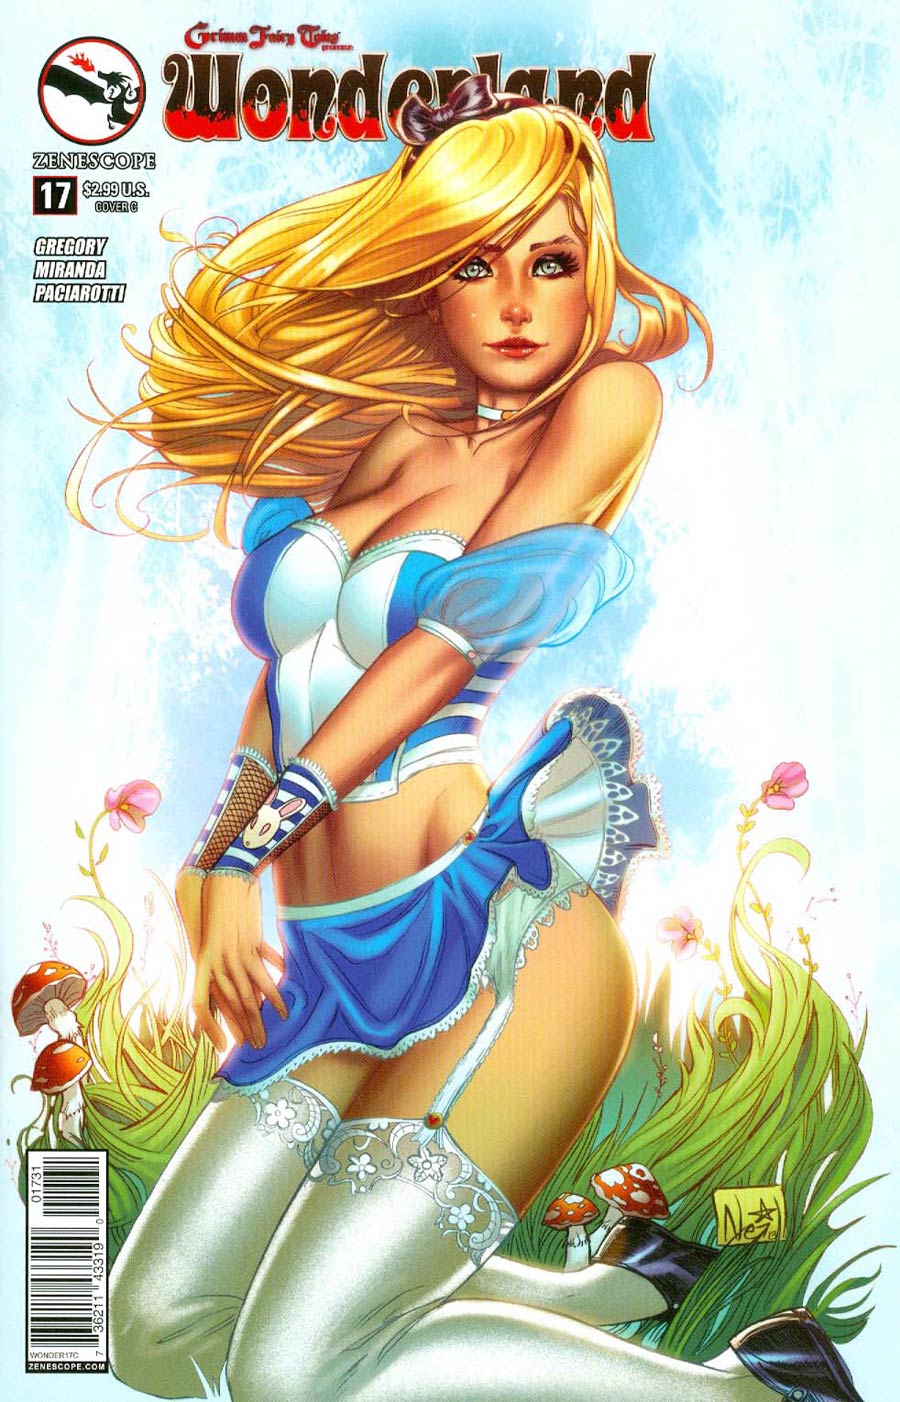 Grimm Fairy Tales Presents Wonderland Vol 2 #17 Cover C Nei Ruffino